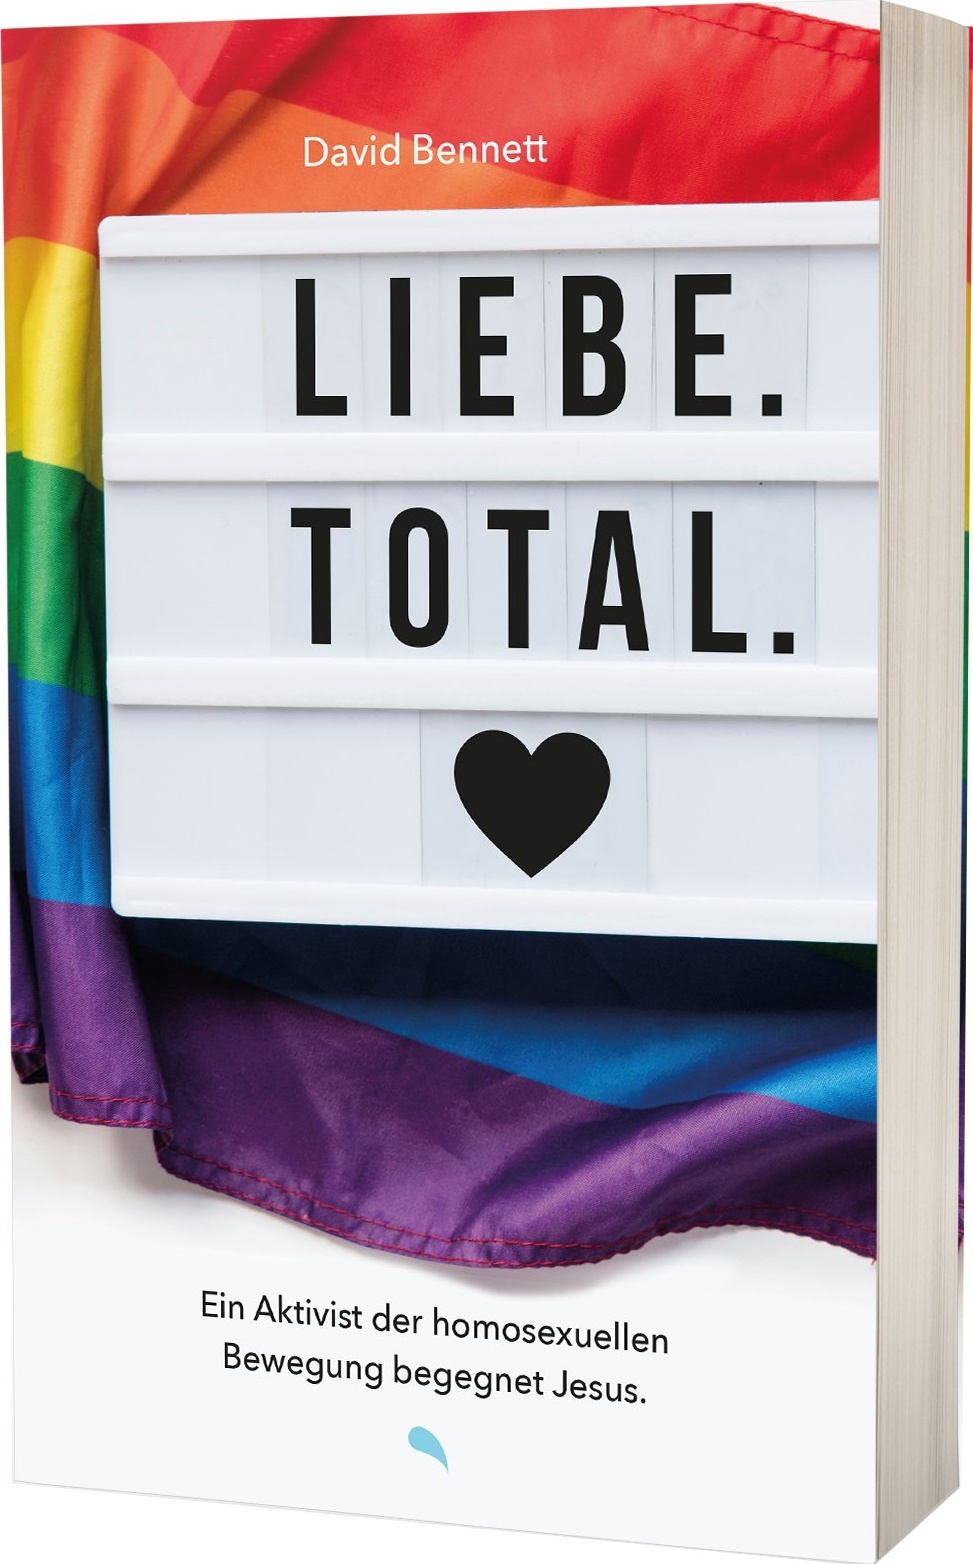 Liebe Total - Ein Aktivist der homosexuellen Bewegung begegnet Jesus